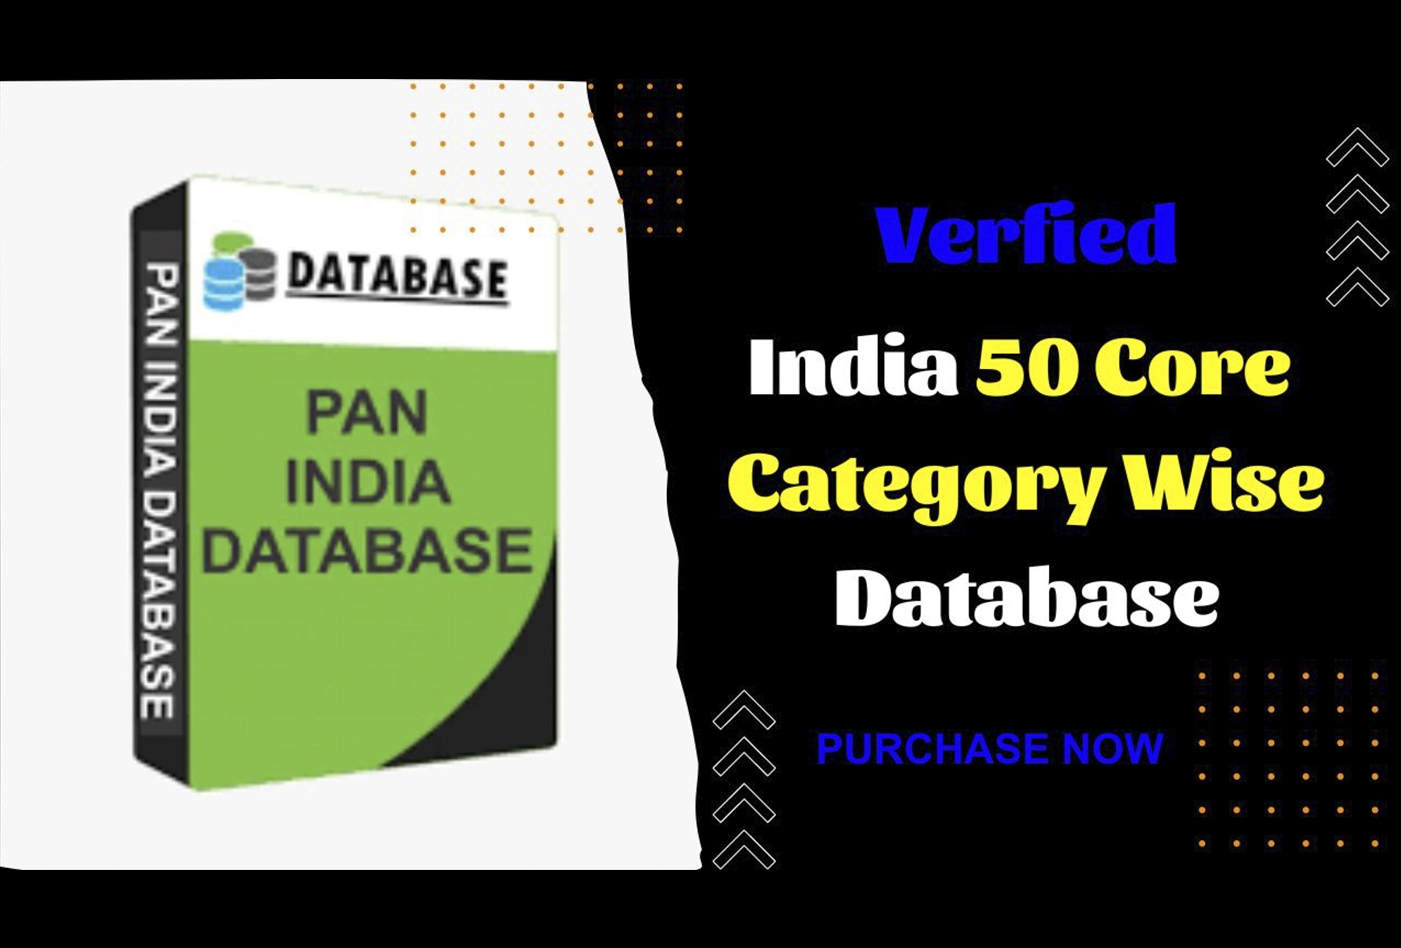 India 50 Core Category Wise Verified Database